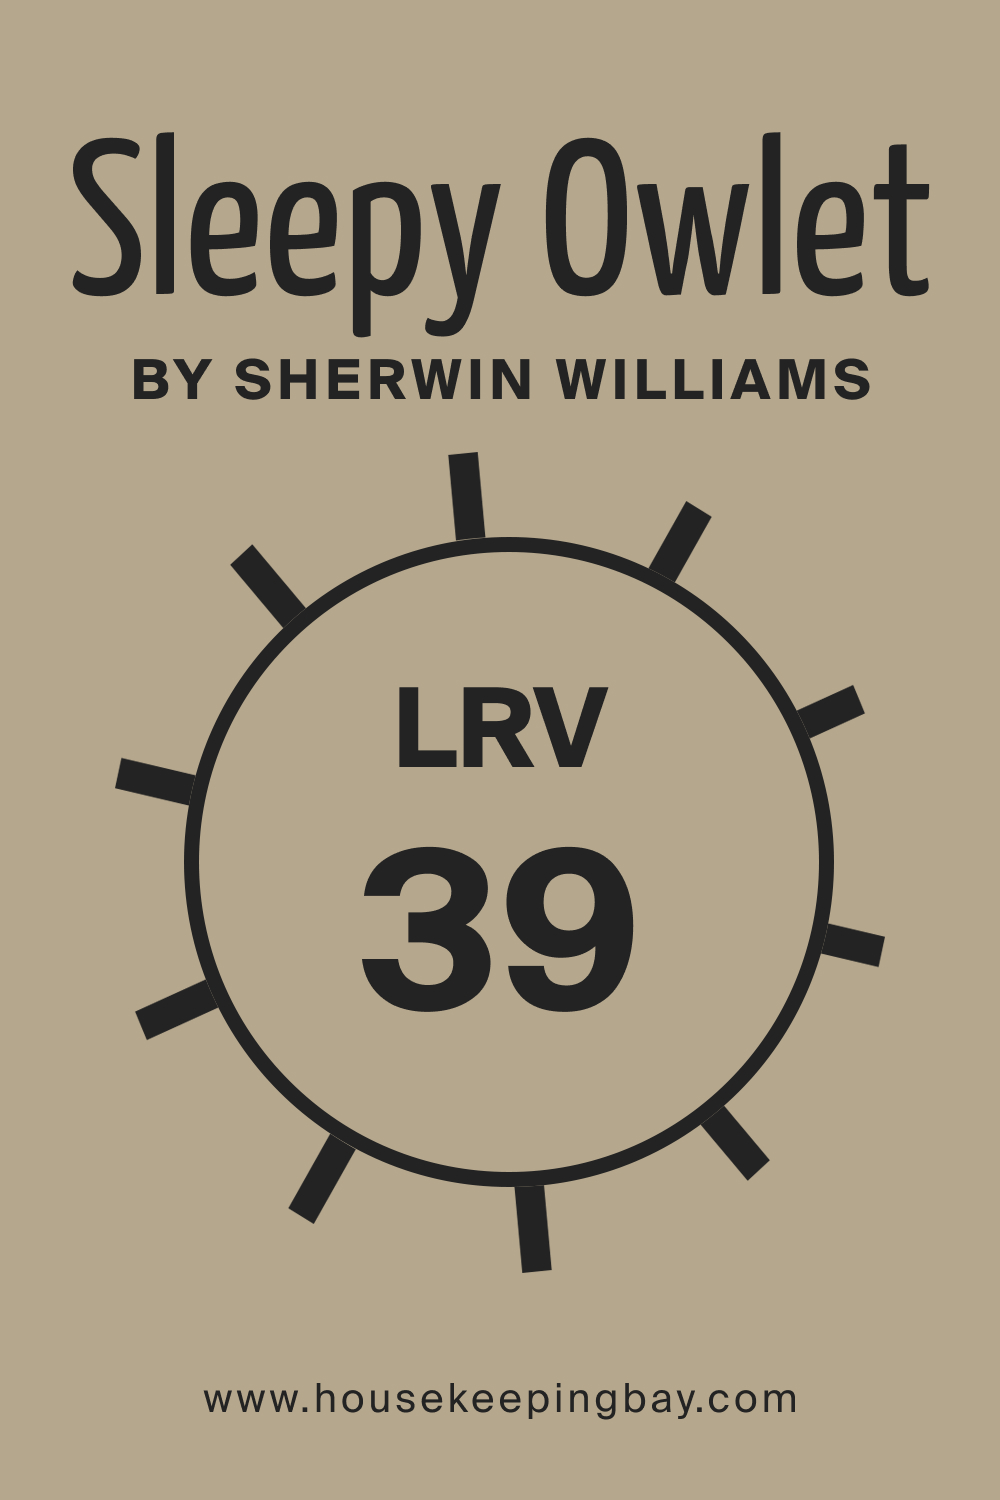 SW 9513 Sleepy Owlet by Sherwin Williams. LRV 39